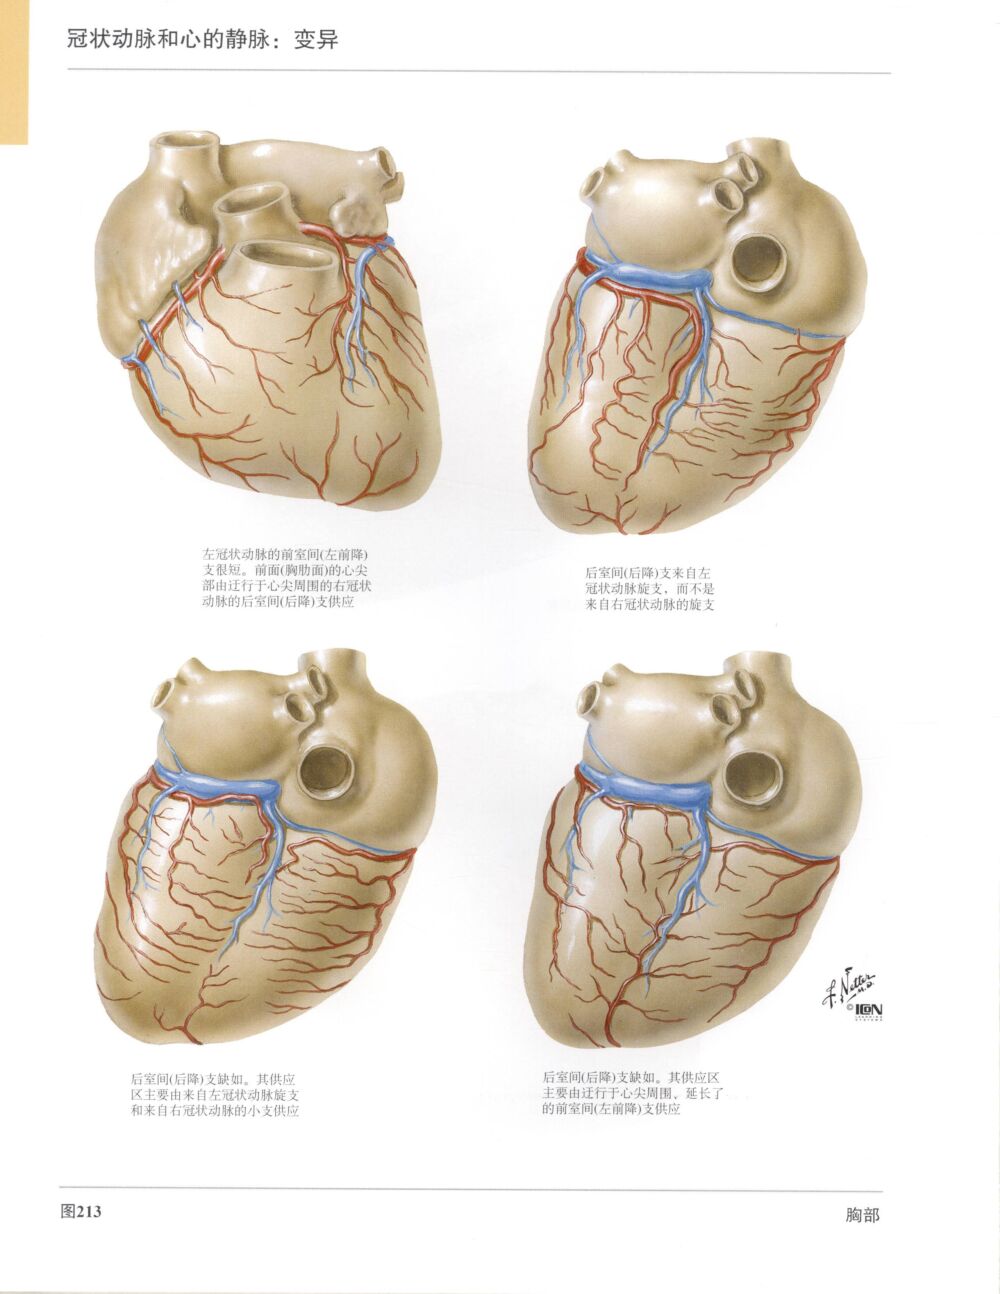 高清人体解剖彩色图谱-心脏